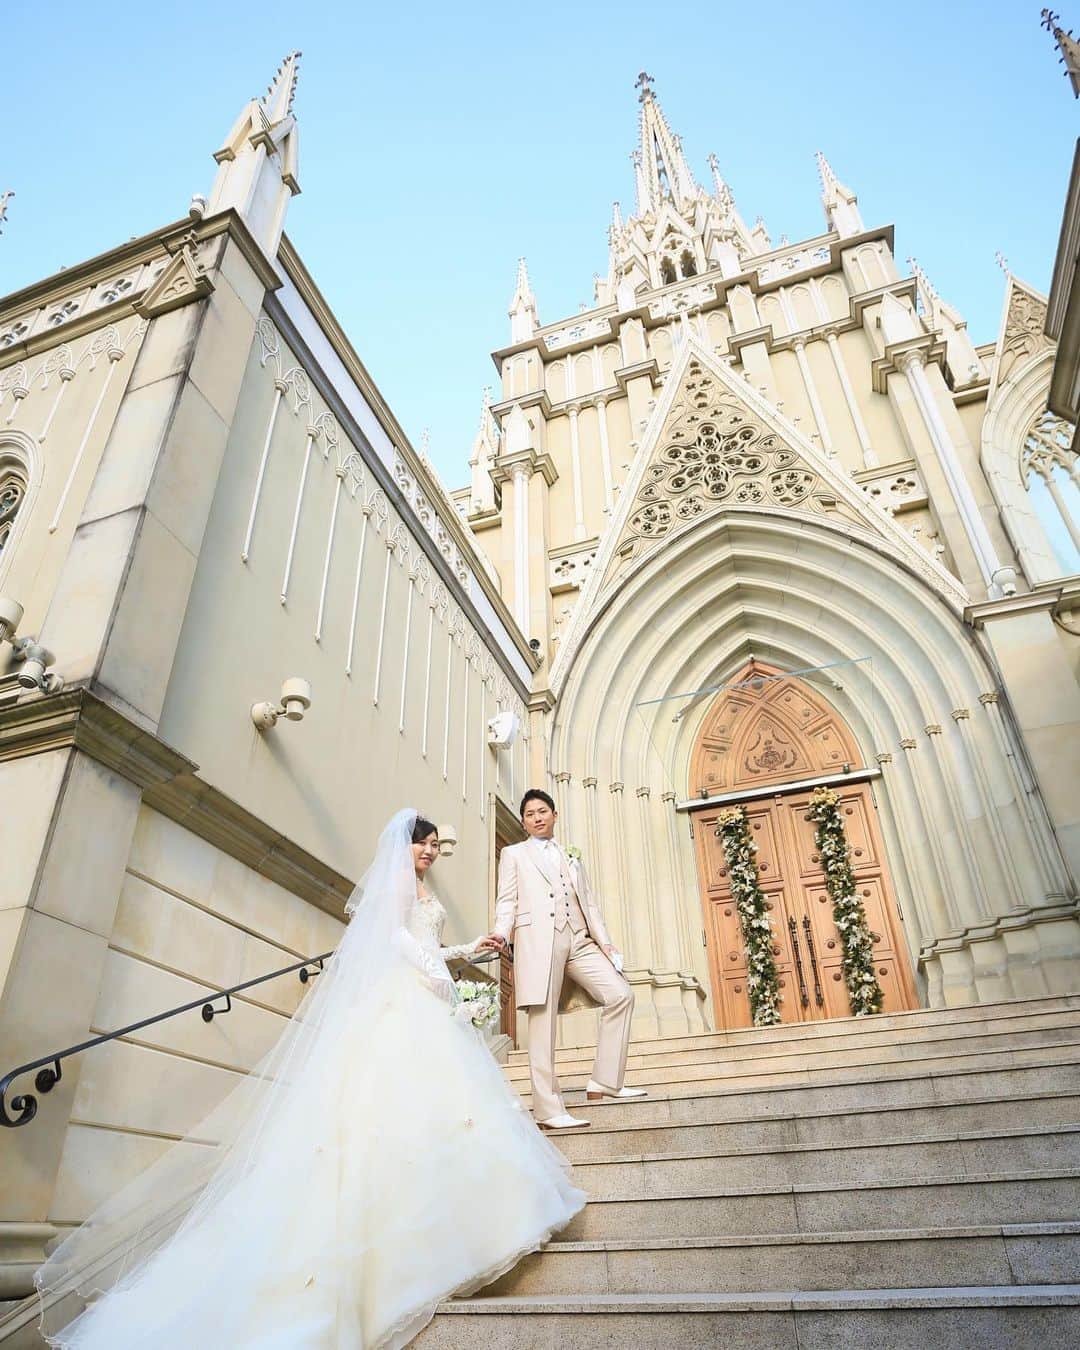 Photopla+（ フォトプラ ）のインスタグラム：「.﻿ ﻿憧れる花嫁さまの多い大聖堂での フォトウェディング✳︎*  大階段を新郎さまにエスコートされて 進む姿は、プリンセスのようで とってもロマンチック…♡  ロマンチックな雰囲気が好みの花嫁さま ぜひ、参考にしてみてくださいね！  ＞＞＞ #スタジオファミリア東京ベイサイド﻿ ﻿ 『写真だけは残したい』方へ＊*﻿ Webから撮影予約できます⚐﻿ @photopla_wedding﻿ ﻿ ——————————﻿ ﻿ オシャレでイマドキな﻿ ウェディングフォト発信中♥﻿ ﻿ 『#フォトプラ花嫁』『#フォトプラ』の﻿ タグをつけて写真をUPしてみて･ﾟ｡﻿ フォトプラのIGでリグラムされるかも♪♪﻿ ﻿ #結婚式 #結婚式準備 #プレ花嫁﻿ #卒花 #前撮り #ロケフォト﻿ #日本中のプレ花嫁さんと繋がりたい﻿ #プラコレ#ウェディングニュース﻿ #ベストアニバーサリー #wedding ﻿ #2020秋婚﻿ #2020冬婚 ﻿ #2021春婚﻿ #2021夏婚﻿ #ウェディングレポ #婚約 #婚約中﻿ #ロケーションフォト﻿ #photopla #ウエディングフォト﻿ #フォトウェディング　﻿ #大聖堂ウェディング﻿ #撮影指示書﻿ #青山セントグレース大聖堂 #大階段」